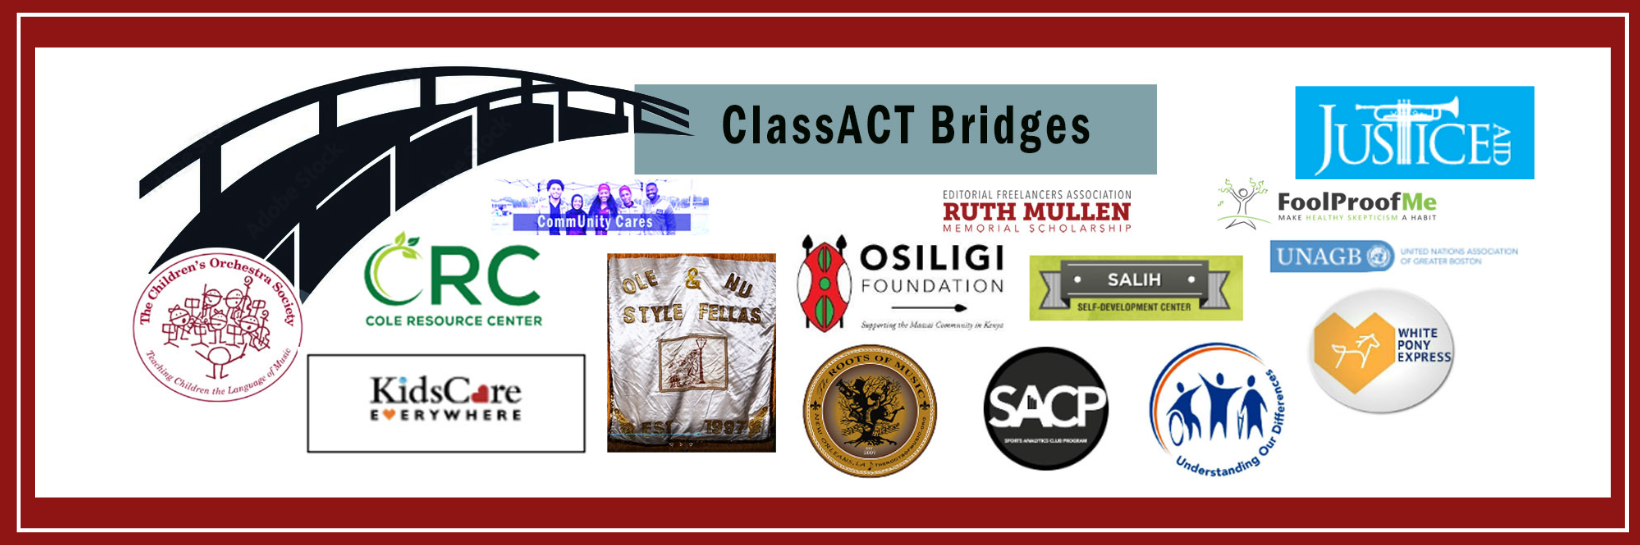 Explore ClassACT's Bridges